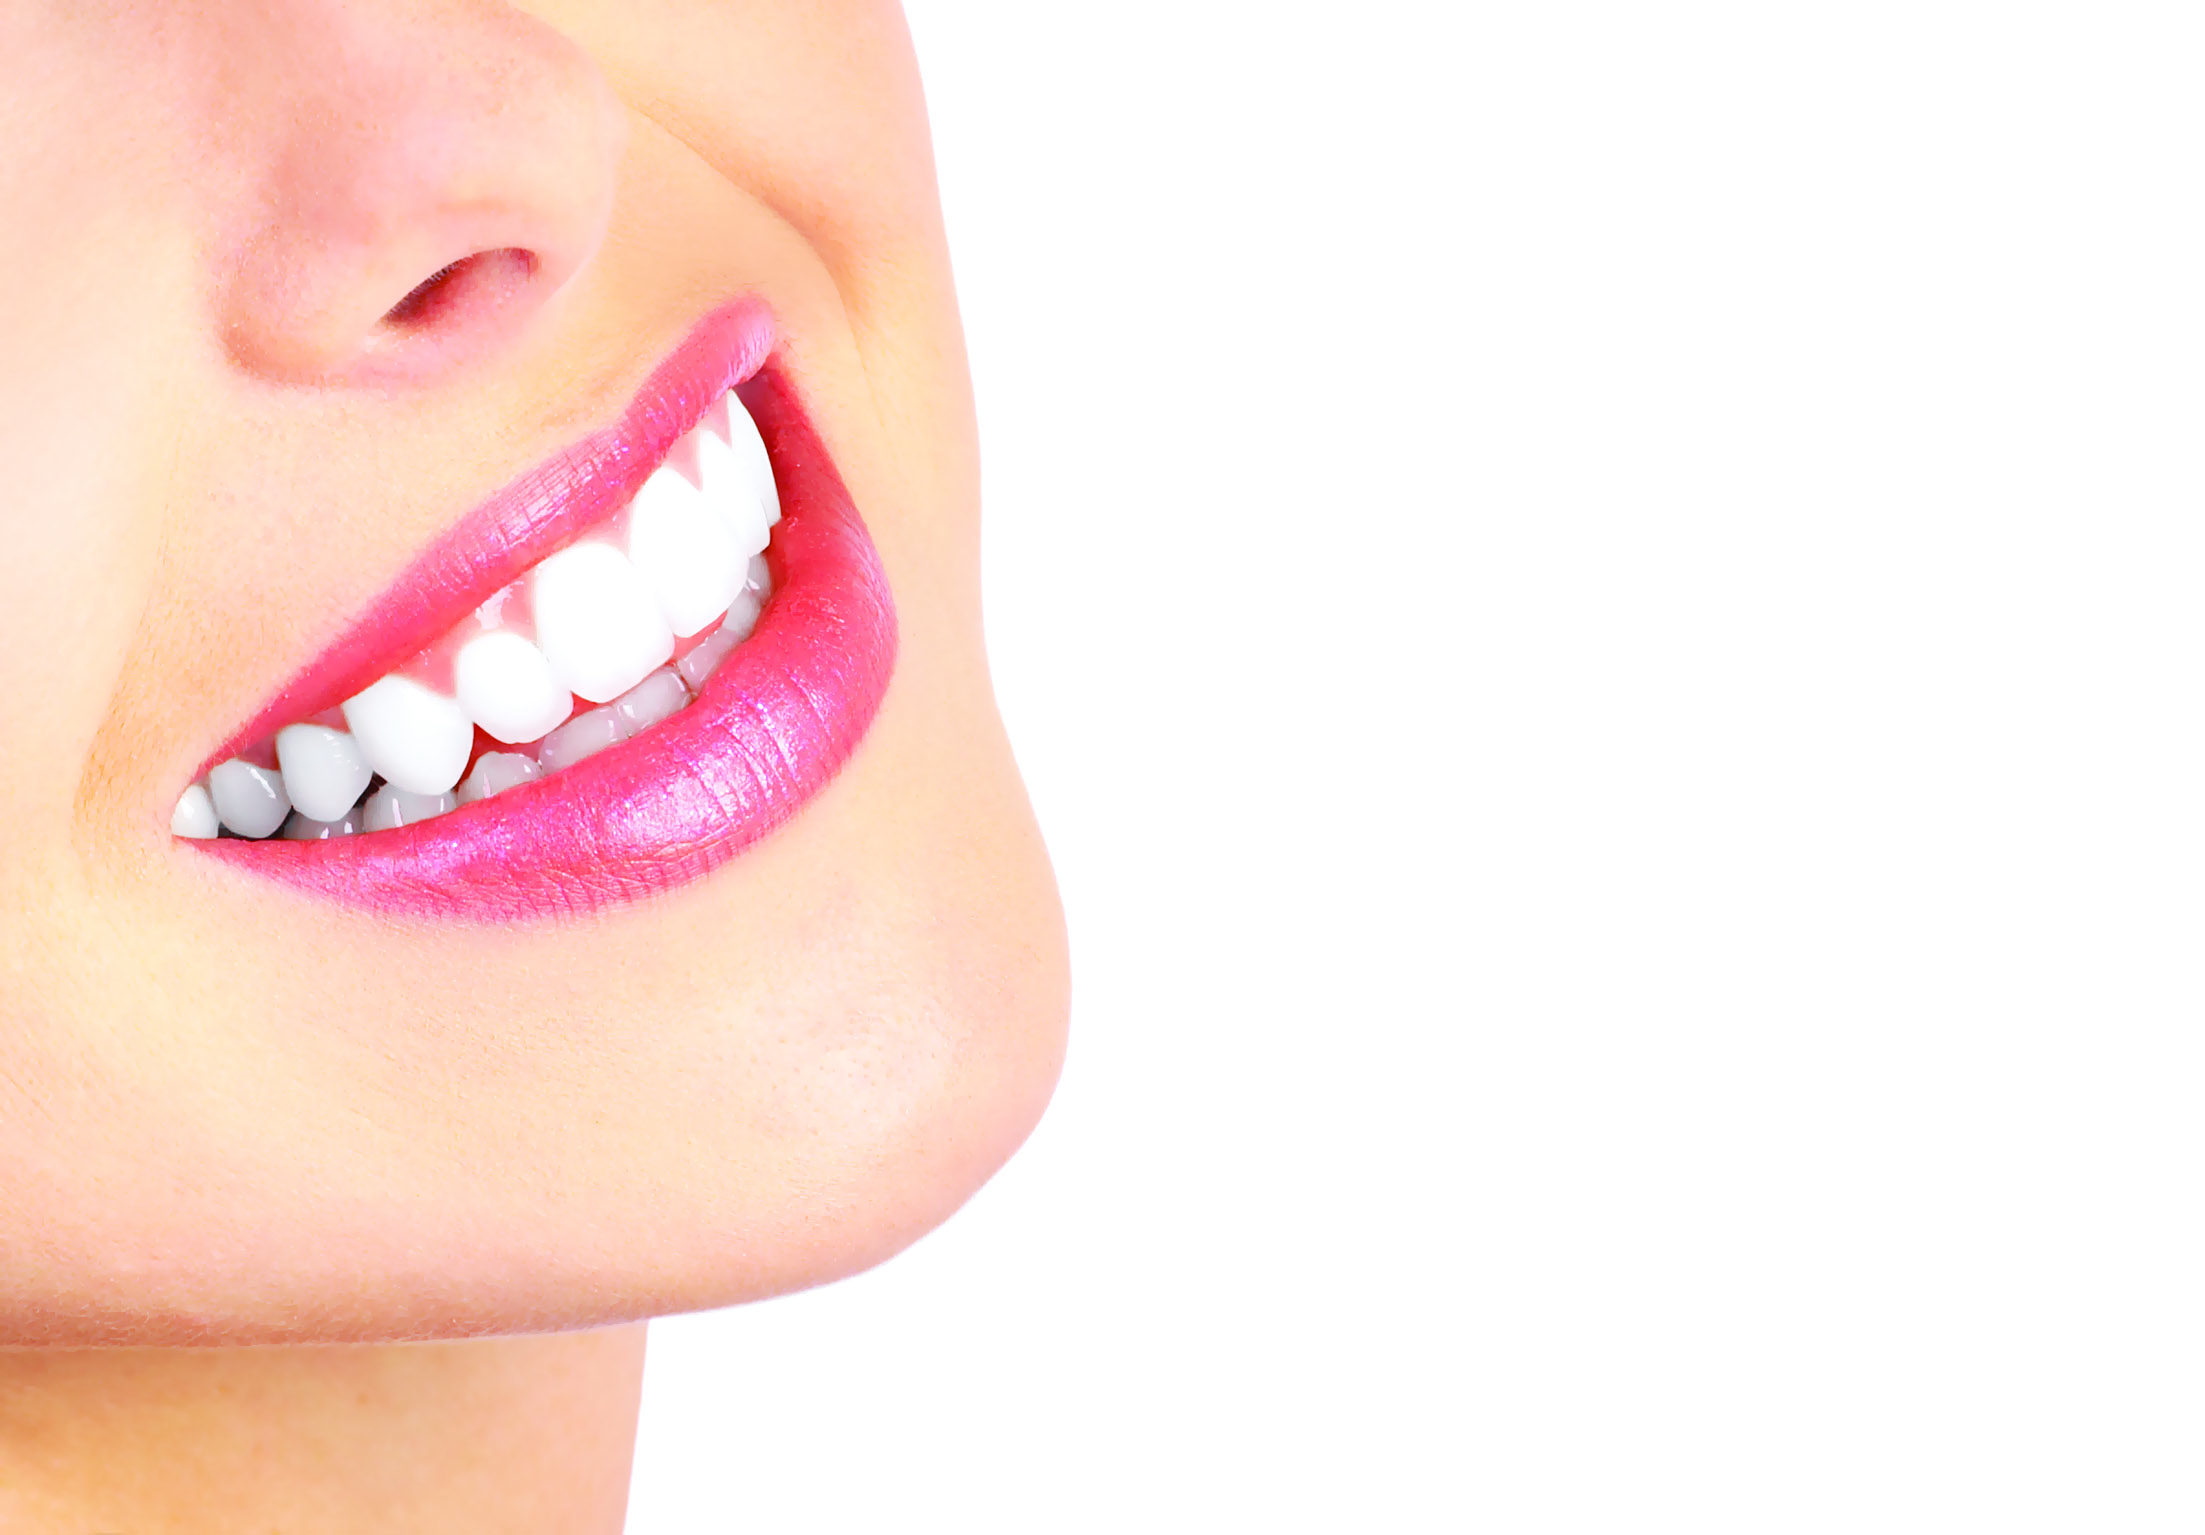 أحدث ابتكار في مجال تجميل الأسنان

الفينير.. ابتسامة أجمل تدوم طويلاً